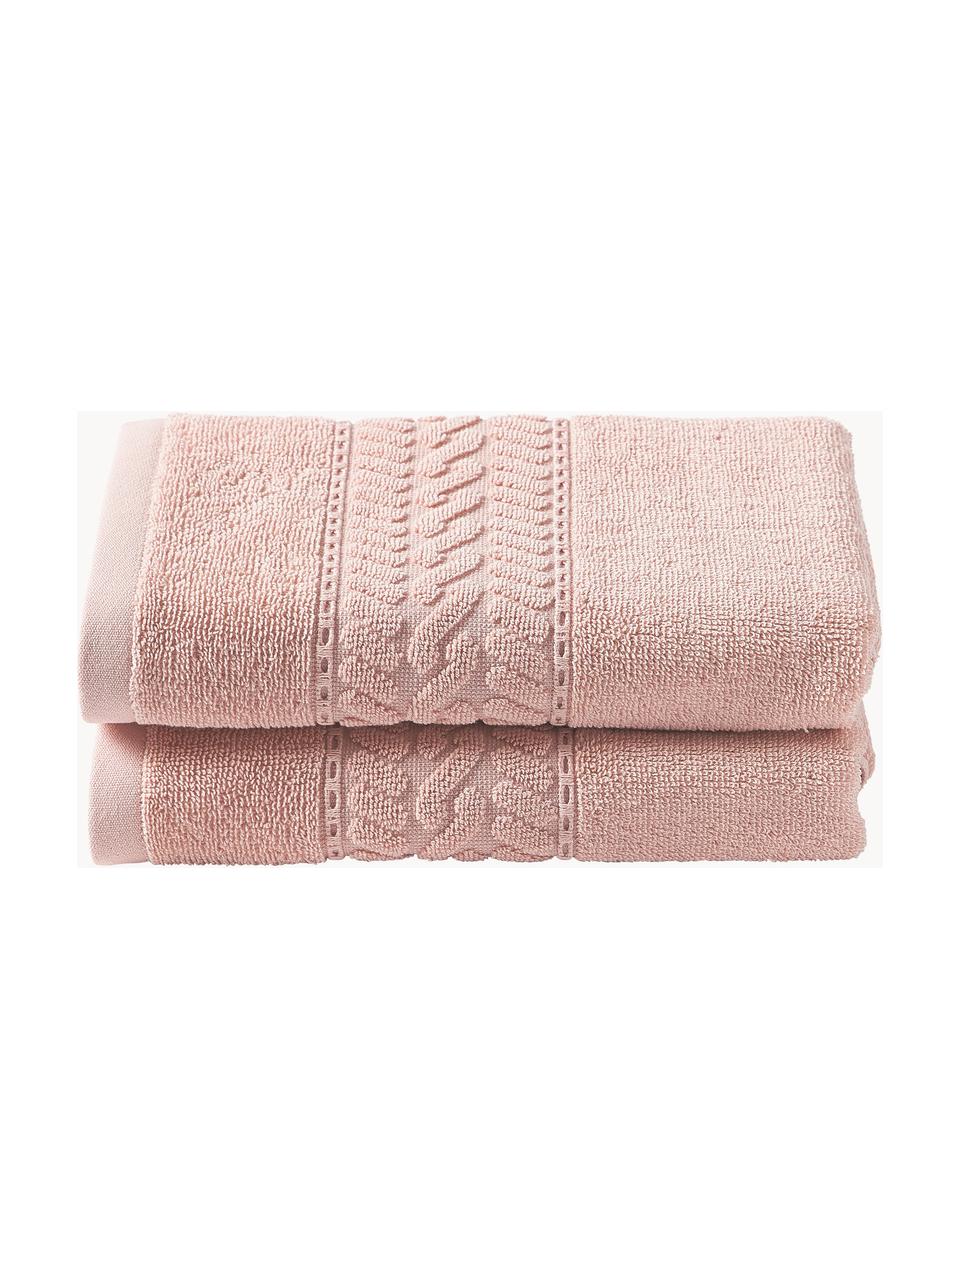 Handtuch Cordelia in verschiedenen Größen, 100 % Baumwolle, Peach, Handtuch, B 50 x L 100 cm, 2 Stück